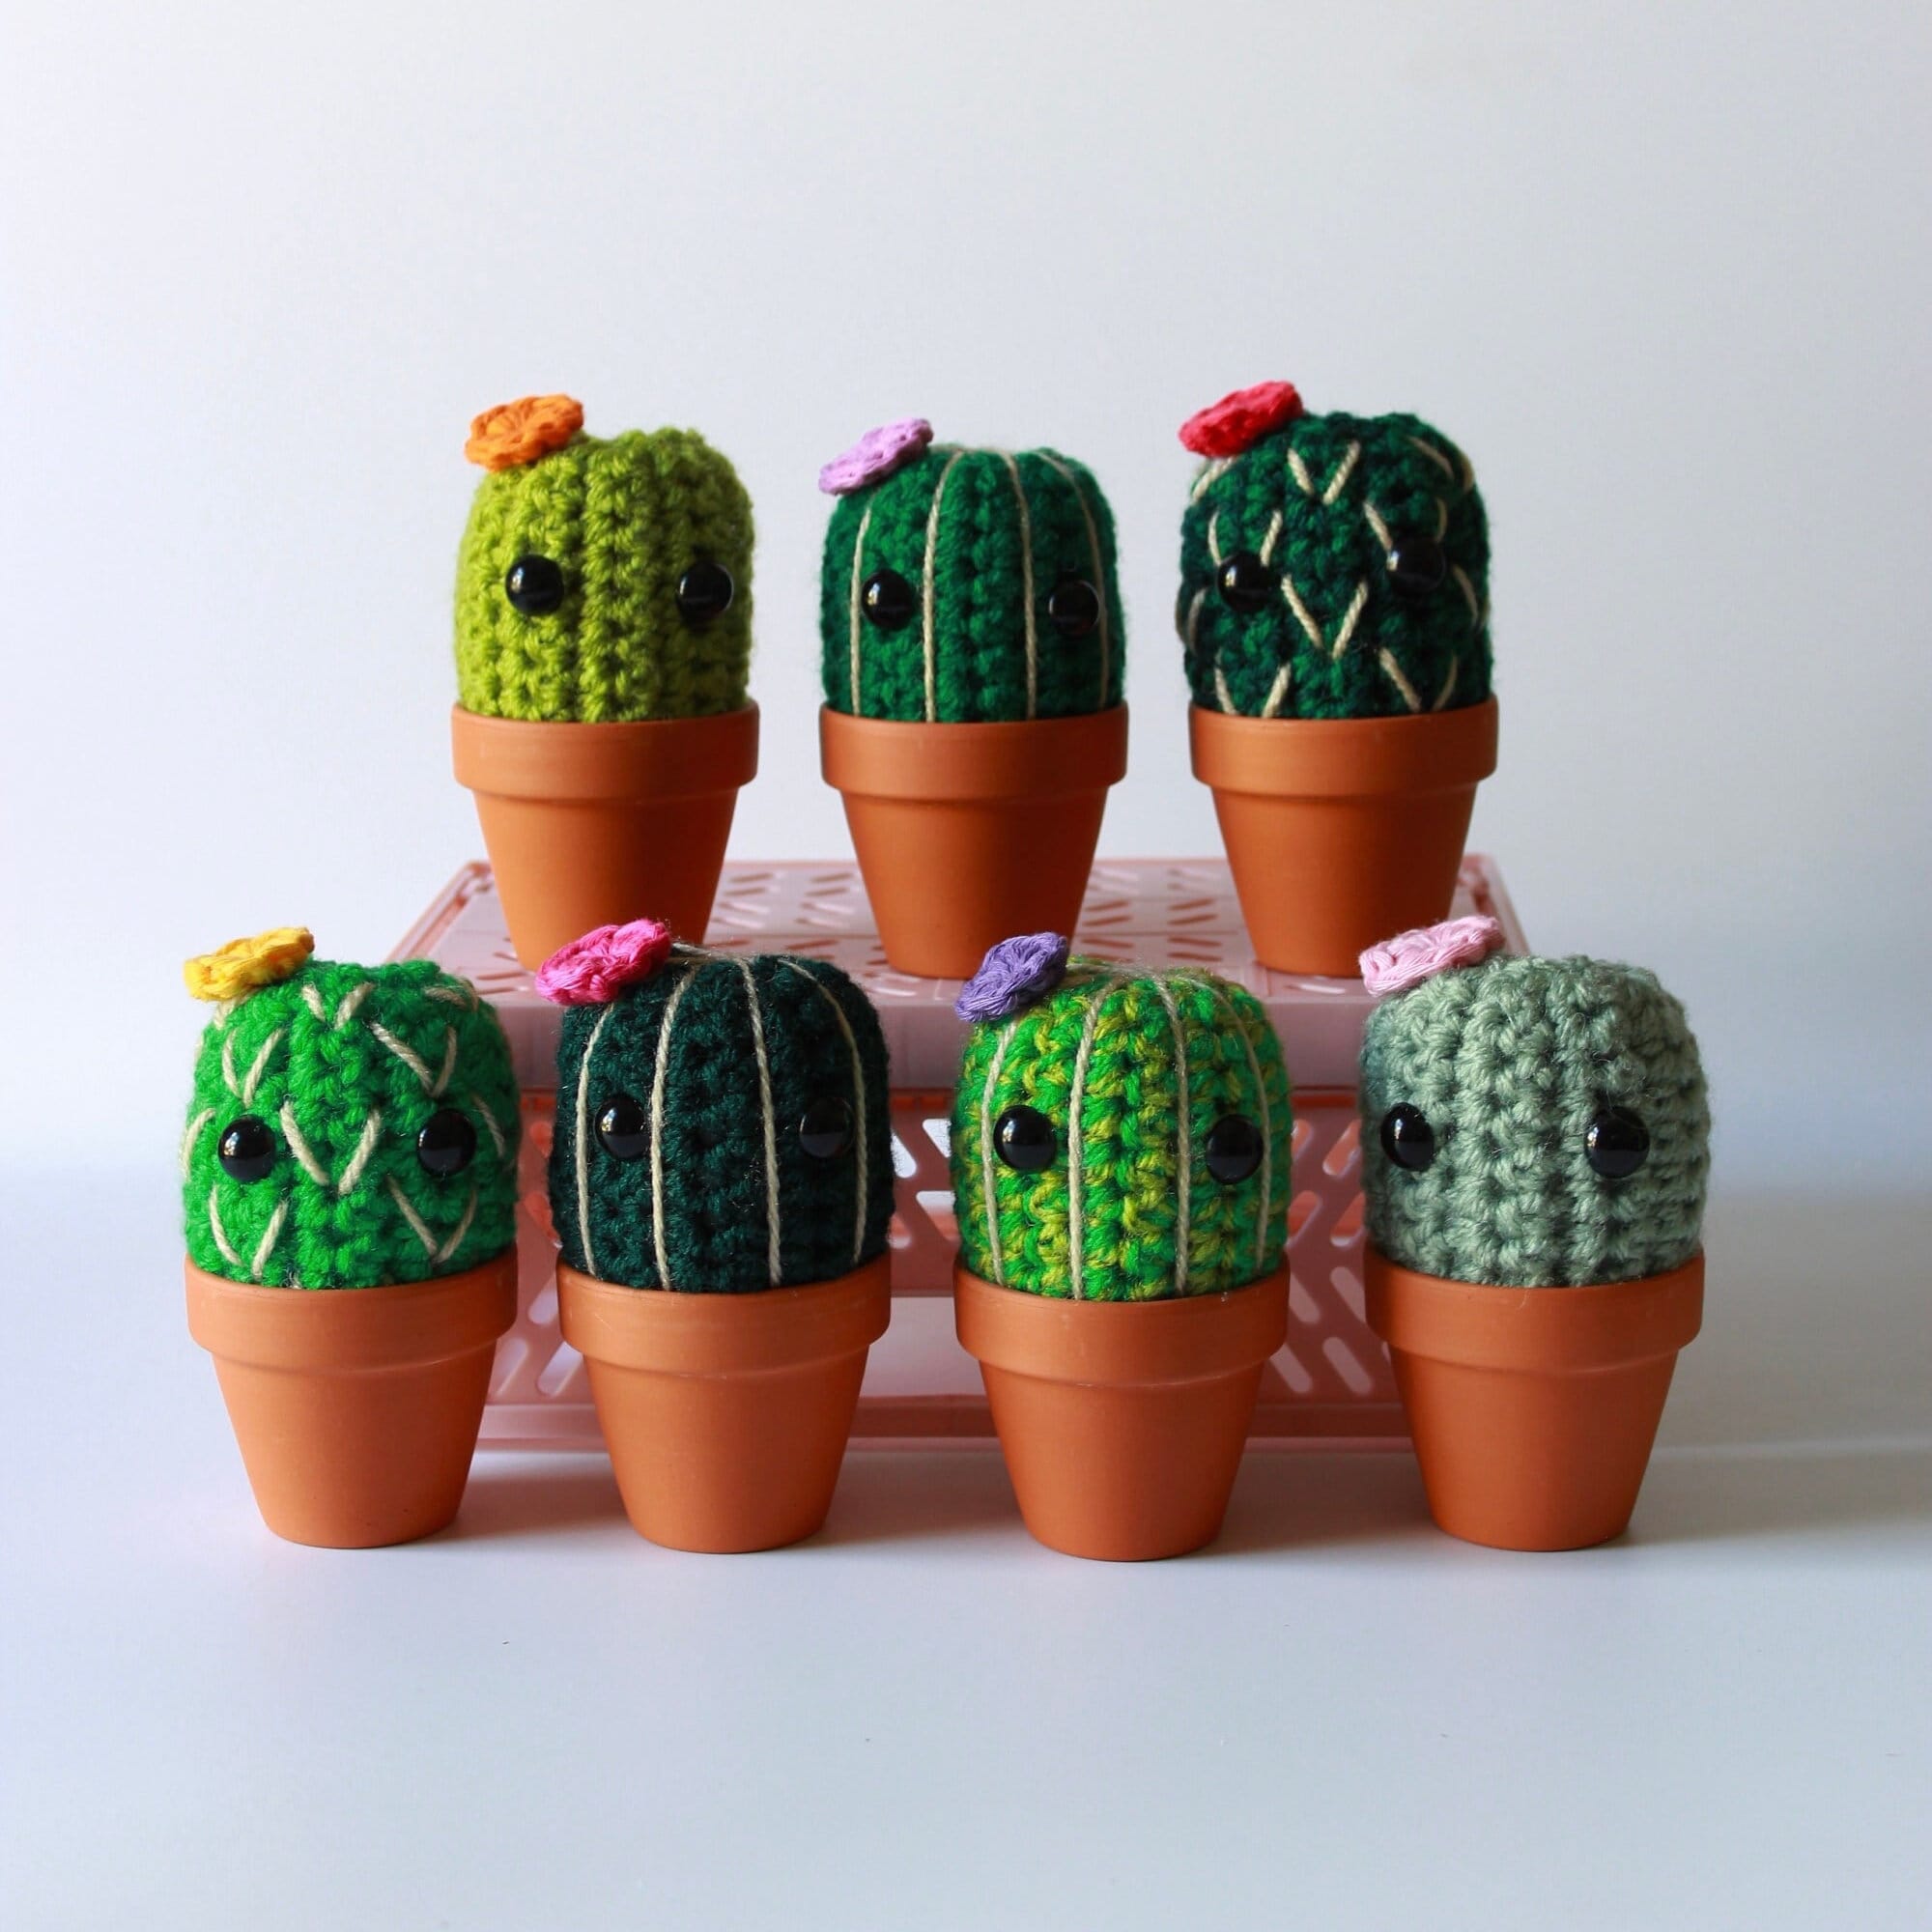 Déco cactus : 18 idées pour un intérieur plein de fantaisie !